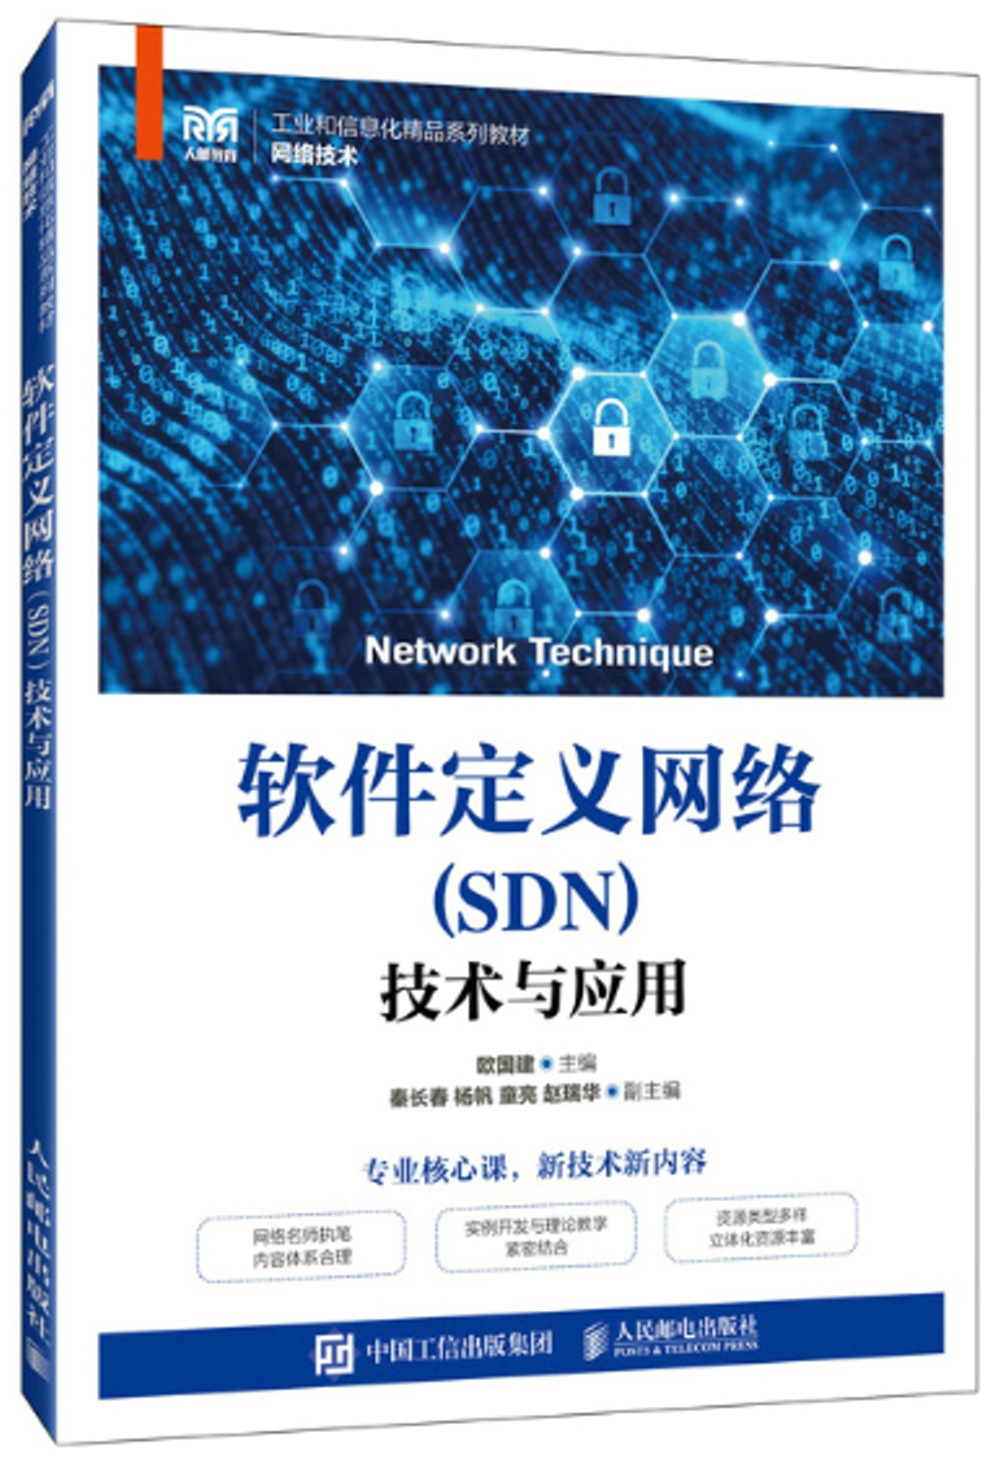 軟件定義網絡（SDN）技術與應用